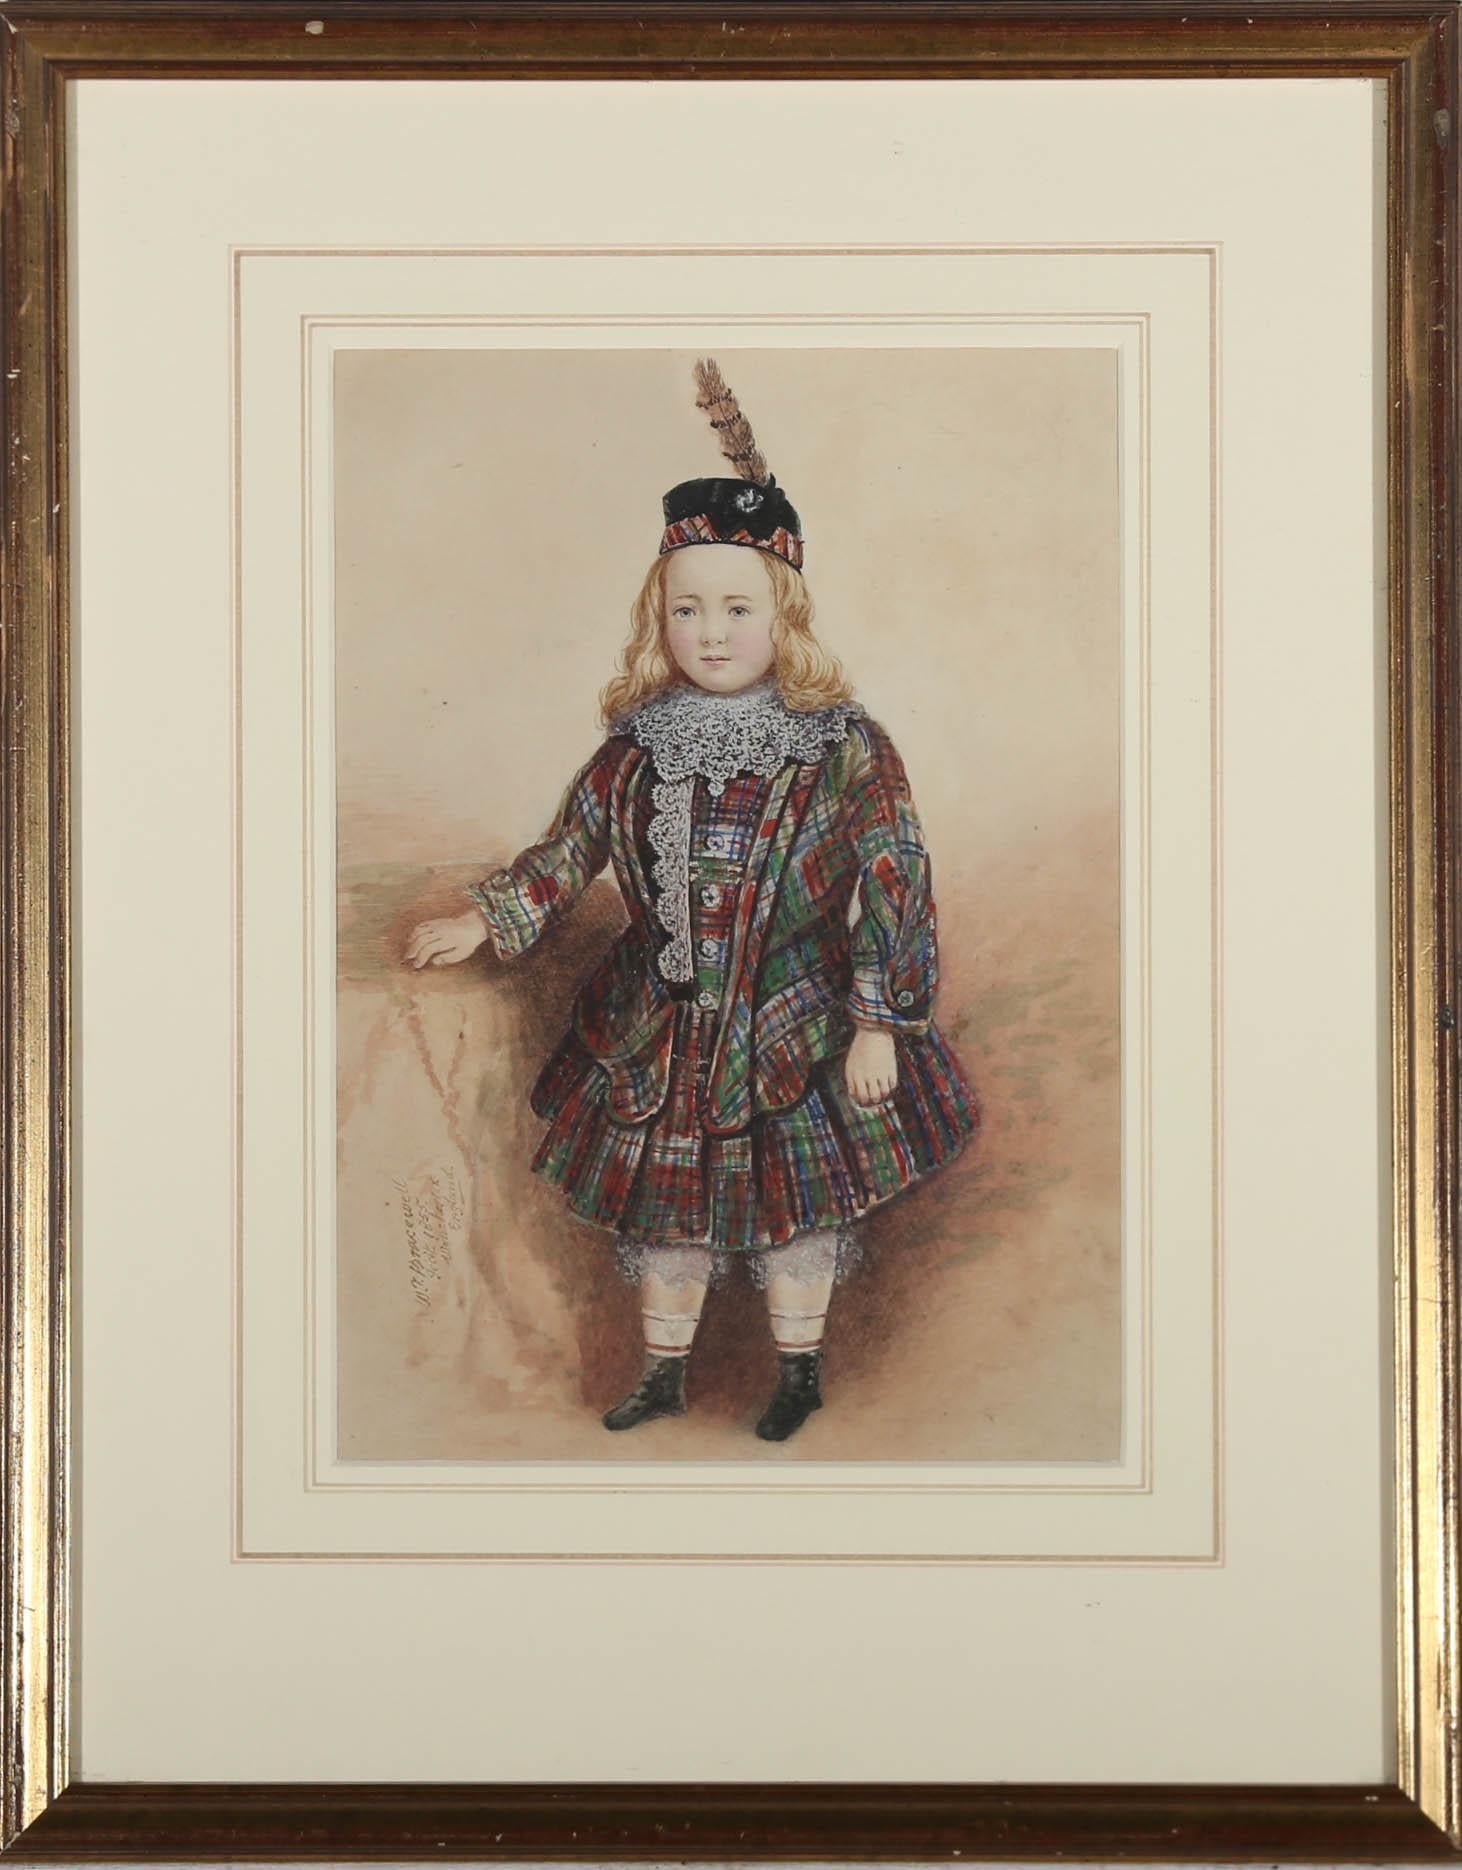 Ganzseitiges, sehr detailliertes Aquarellporträt eines Kindes in traditionellem Schottenkaro. Signiert und datiert (1855) unten links. Fein präsentiert in einem schlanken vergoldeten Rahmen mit einem ergänzenden Passepartout. Auf dem Papier.